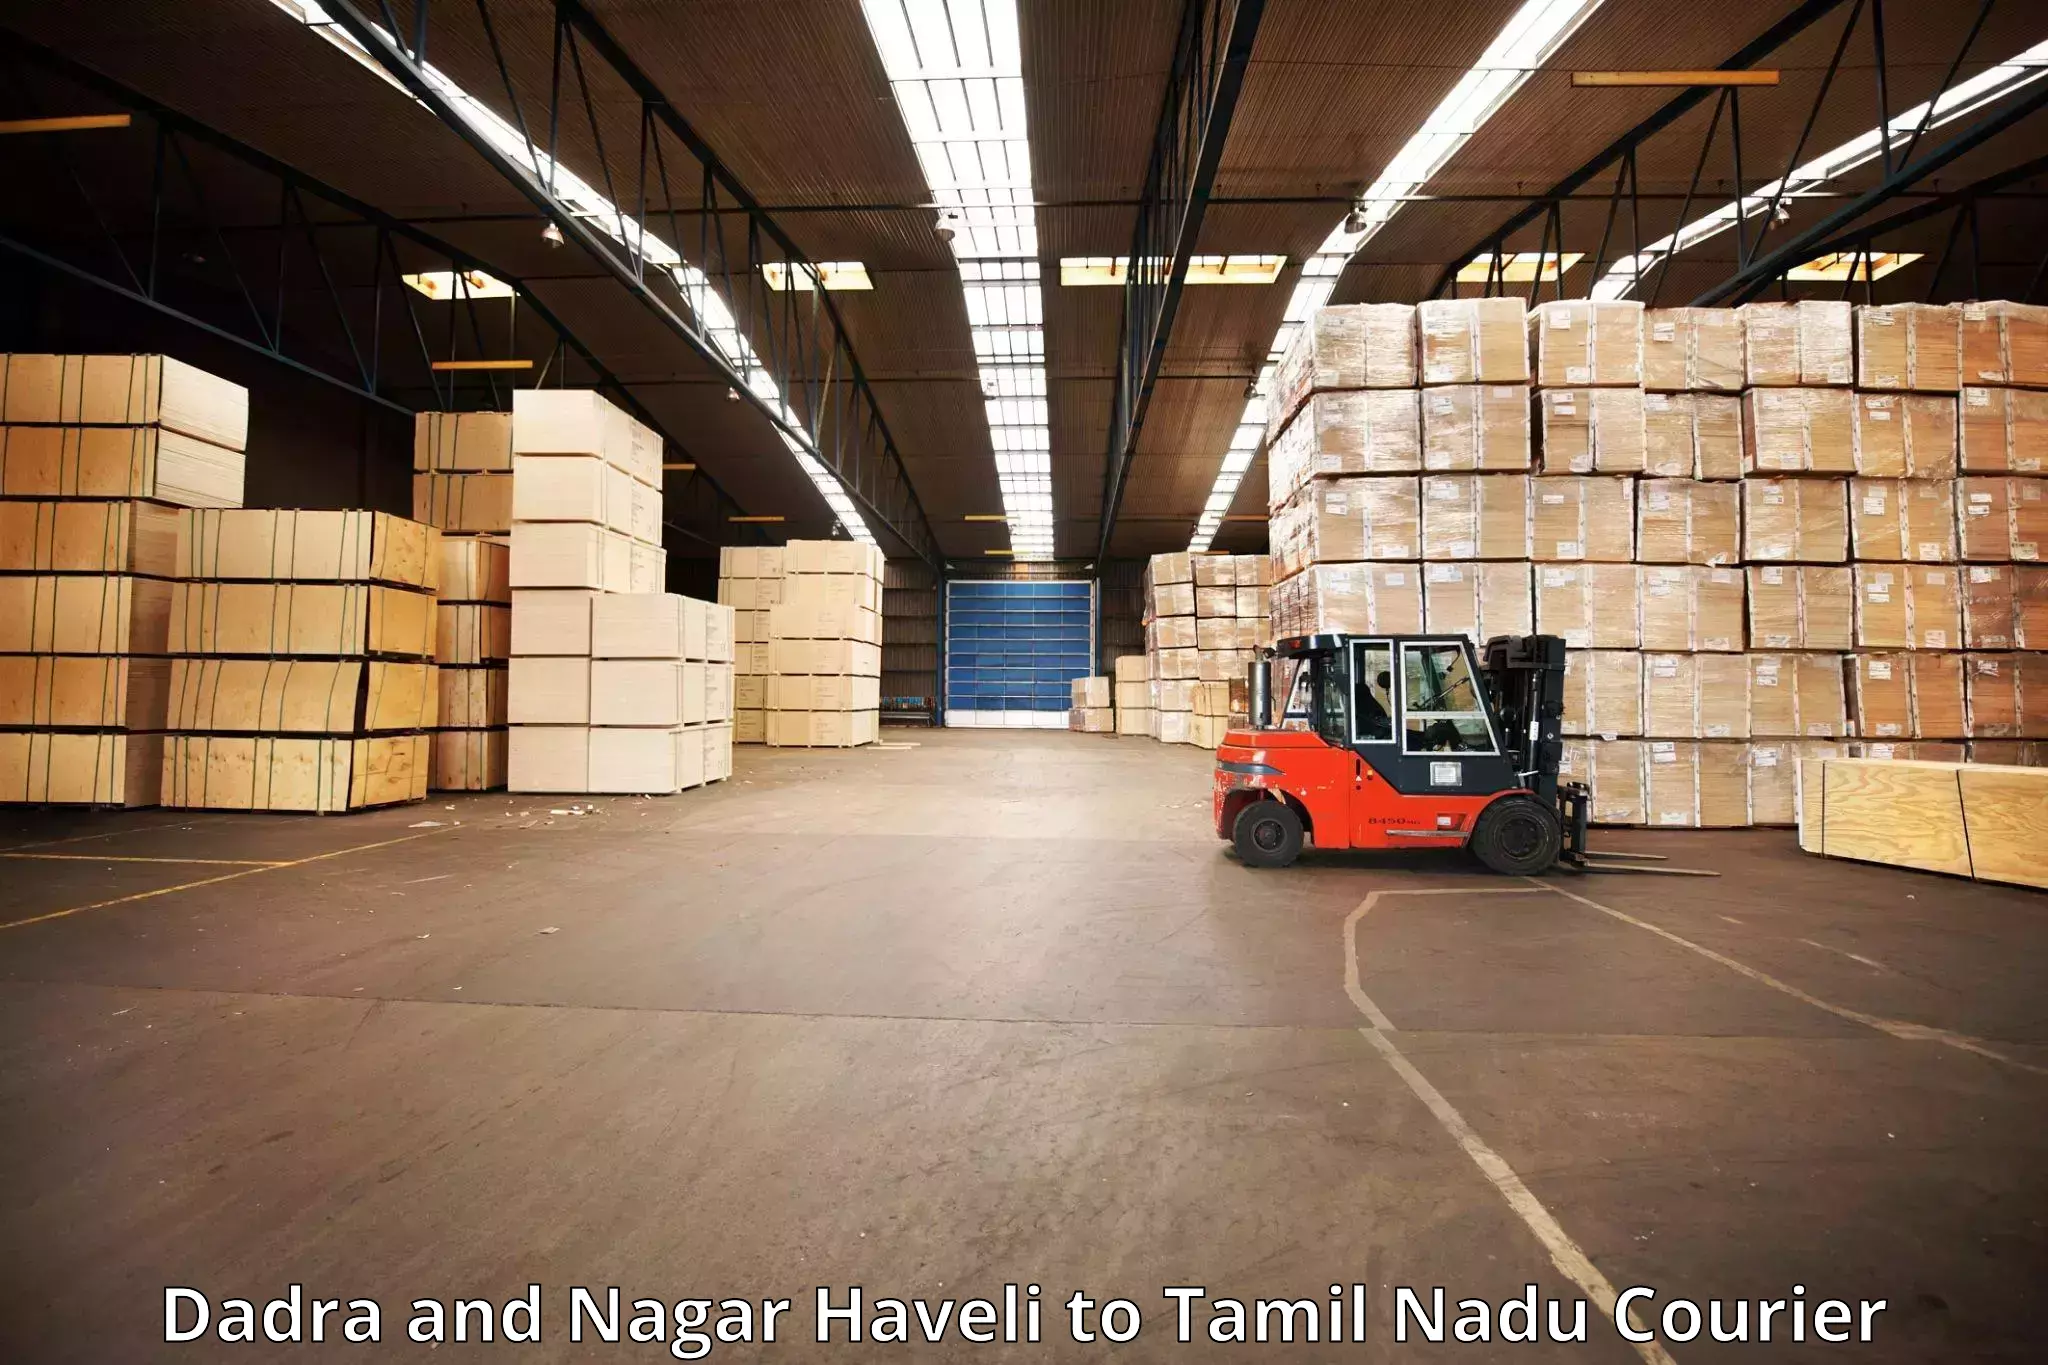 Luggage shipping service Dadra and Nagar Haveli to Chengalpattu